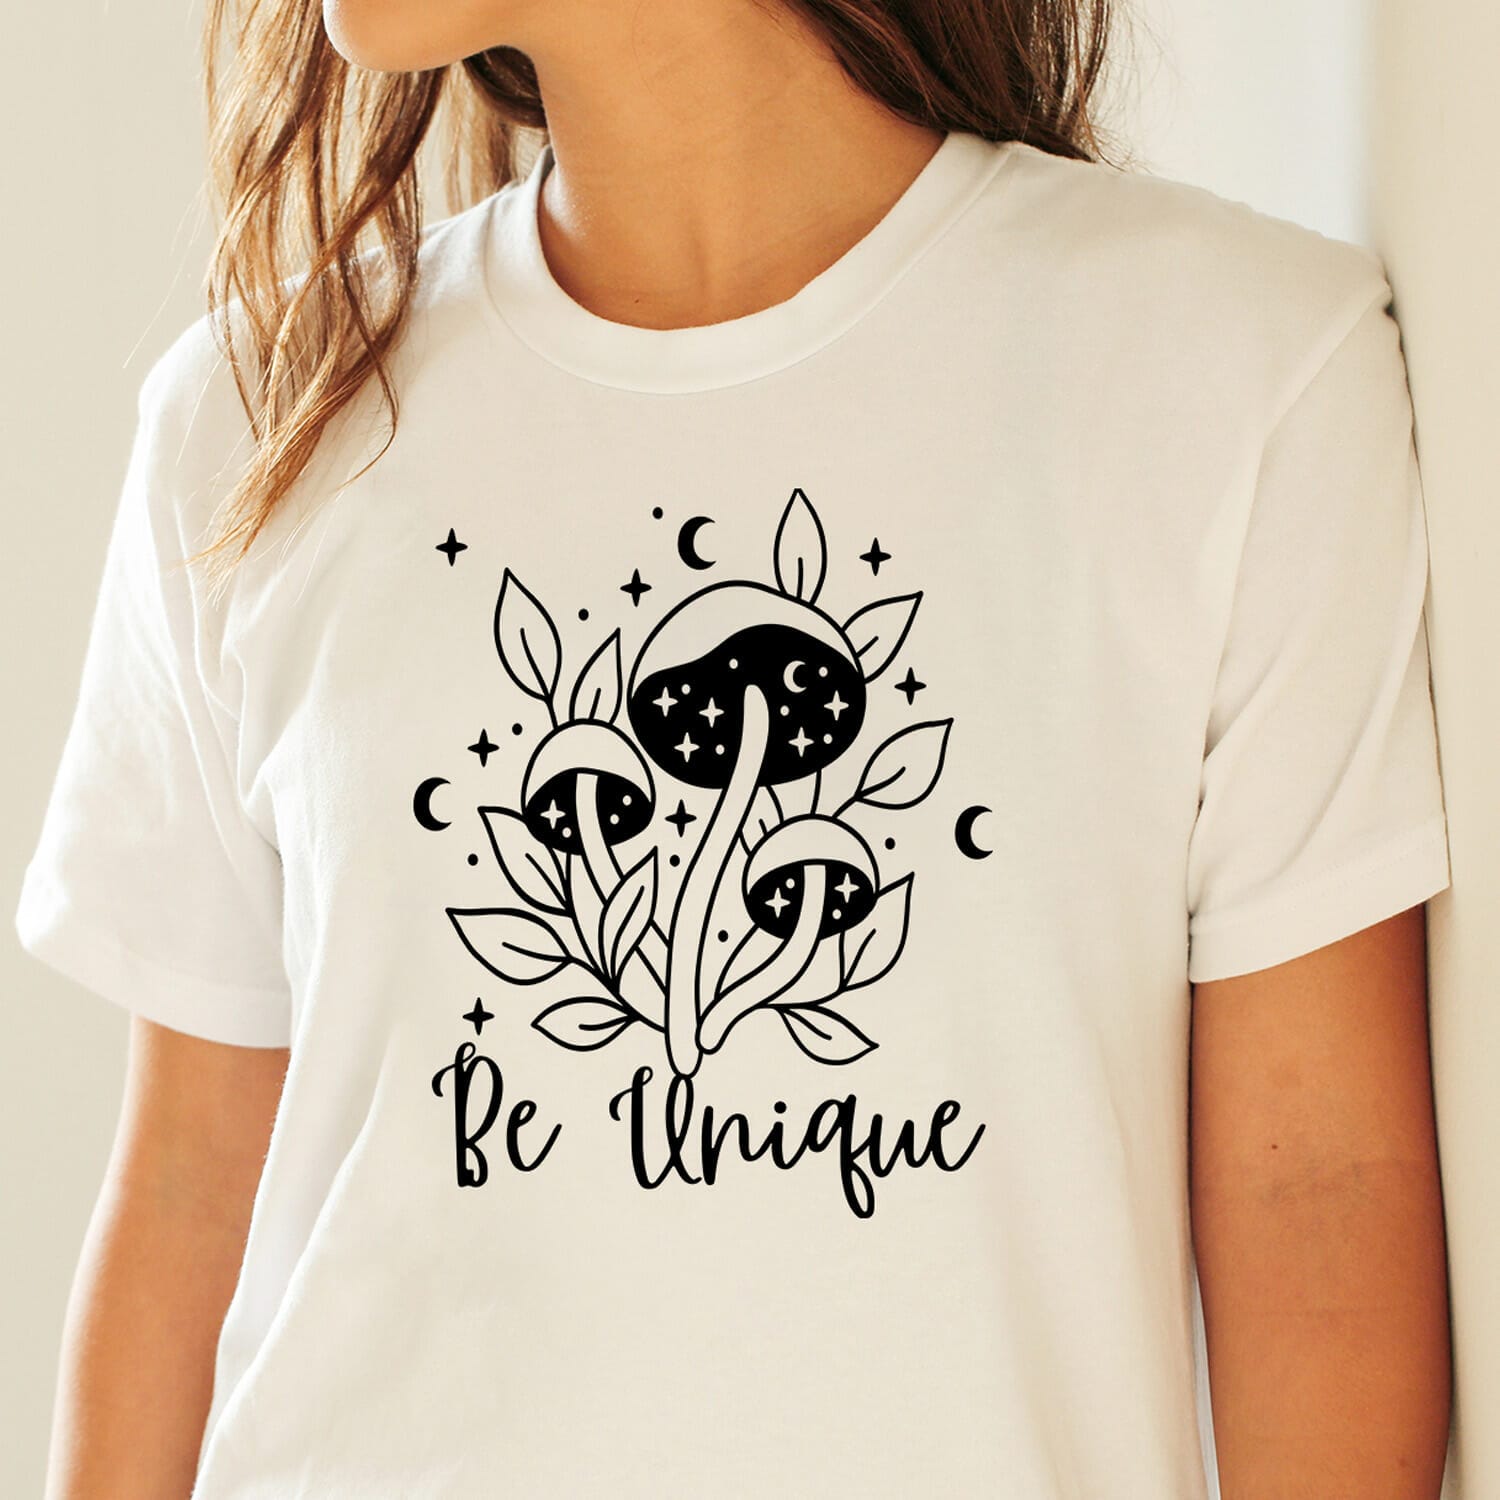 Boho Inspirational Be unique T-shirt Design